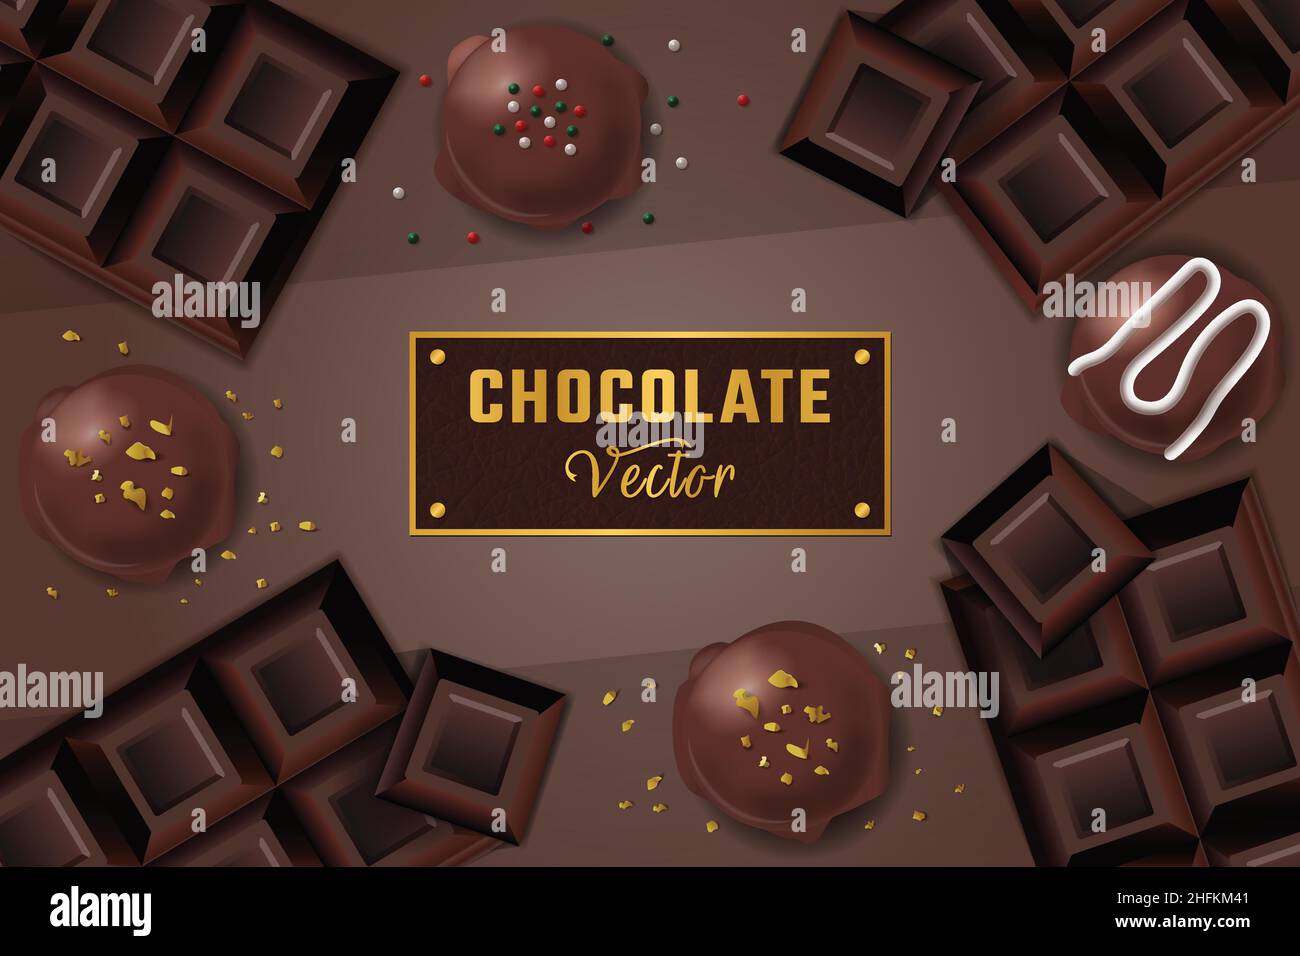 Affiche de fond sur le chocolat avec barres de chocolat, truffe de chocolat, bombes au chocolat et saupoudrer, étiquette plaquée or Illustration de Vecteur